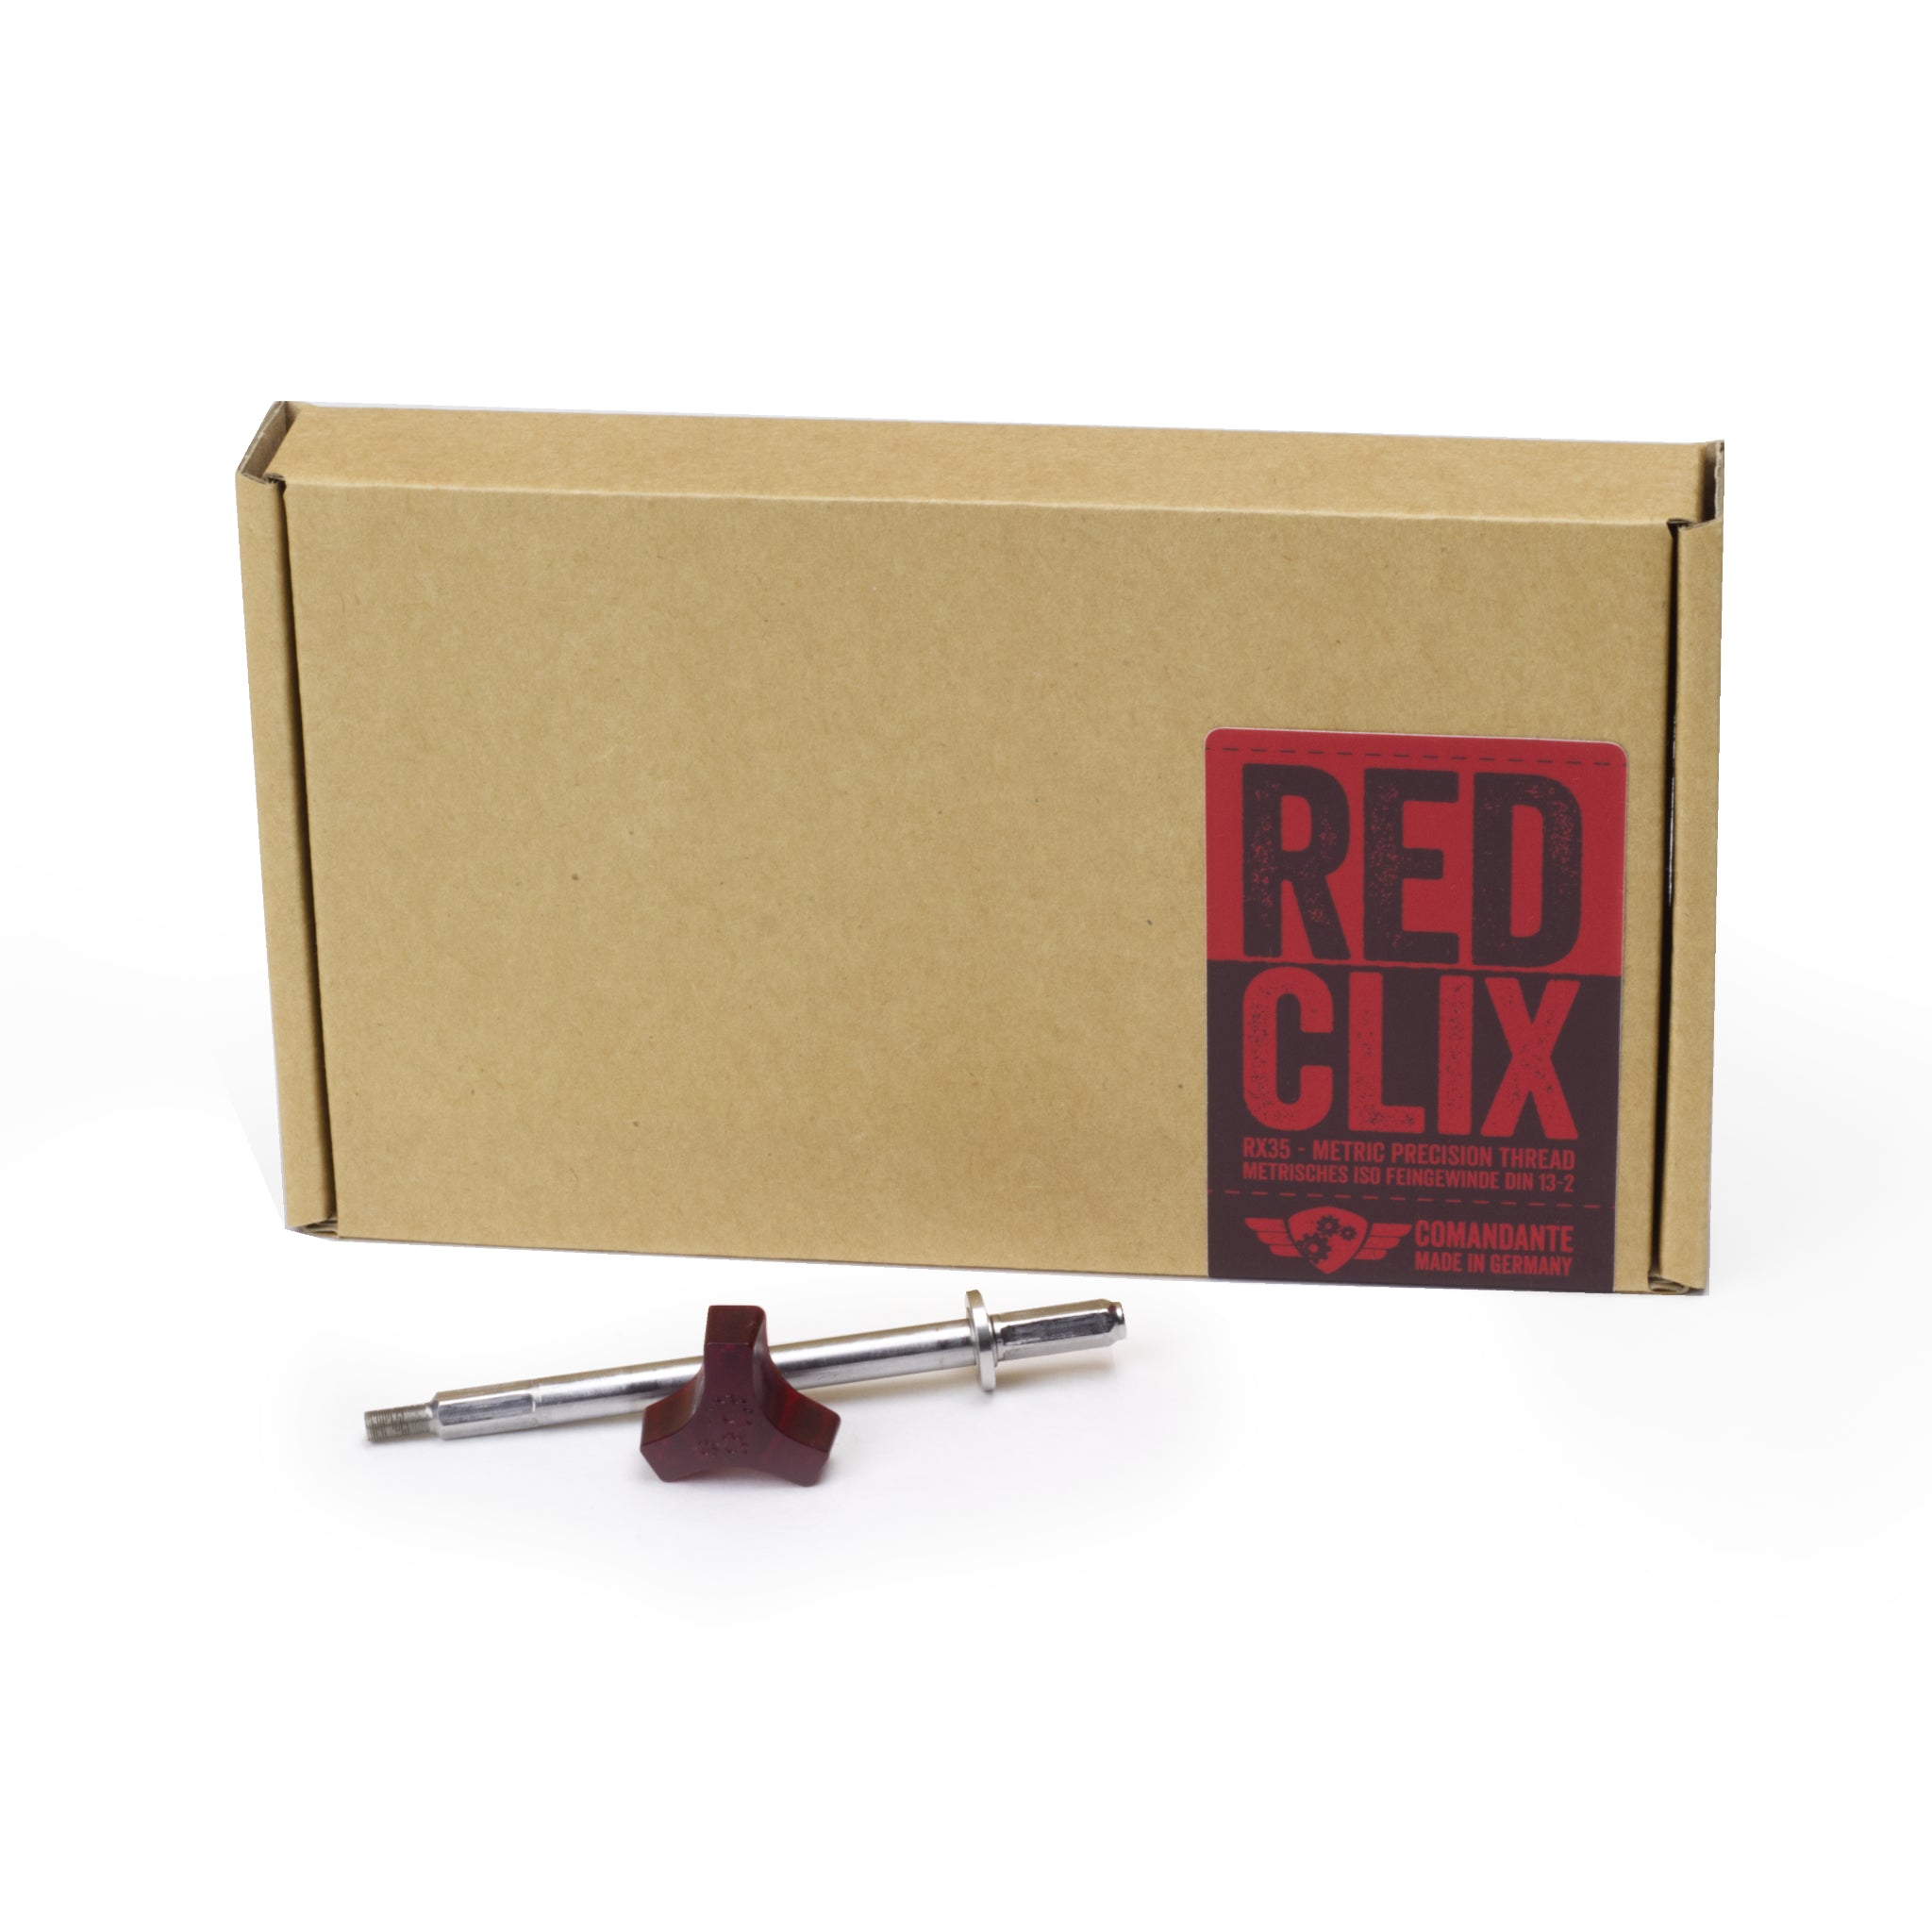 Bild der Wettbewerbsachse Red Clix RX35 für die Comandante C40 Kaffeemühle. Die Achse liegt vor der braunen Produktverpackung mit rot/schwarzem Aufkleber.